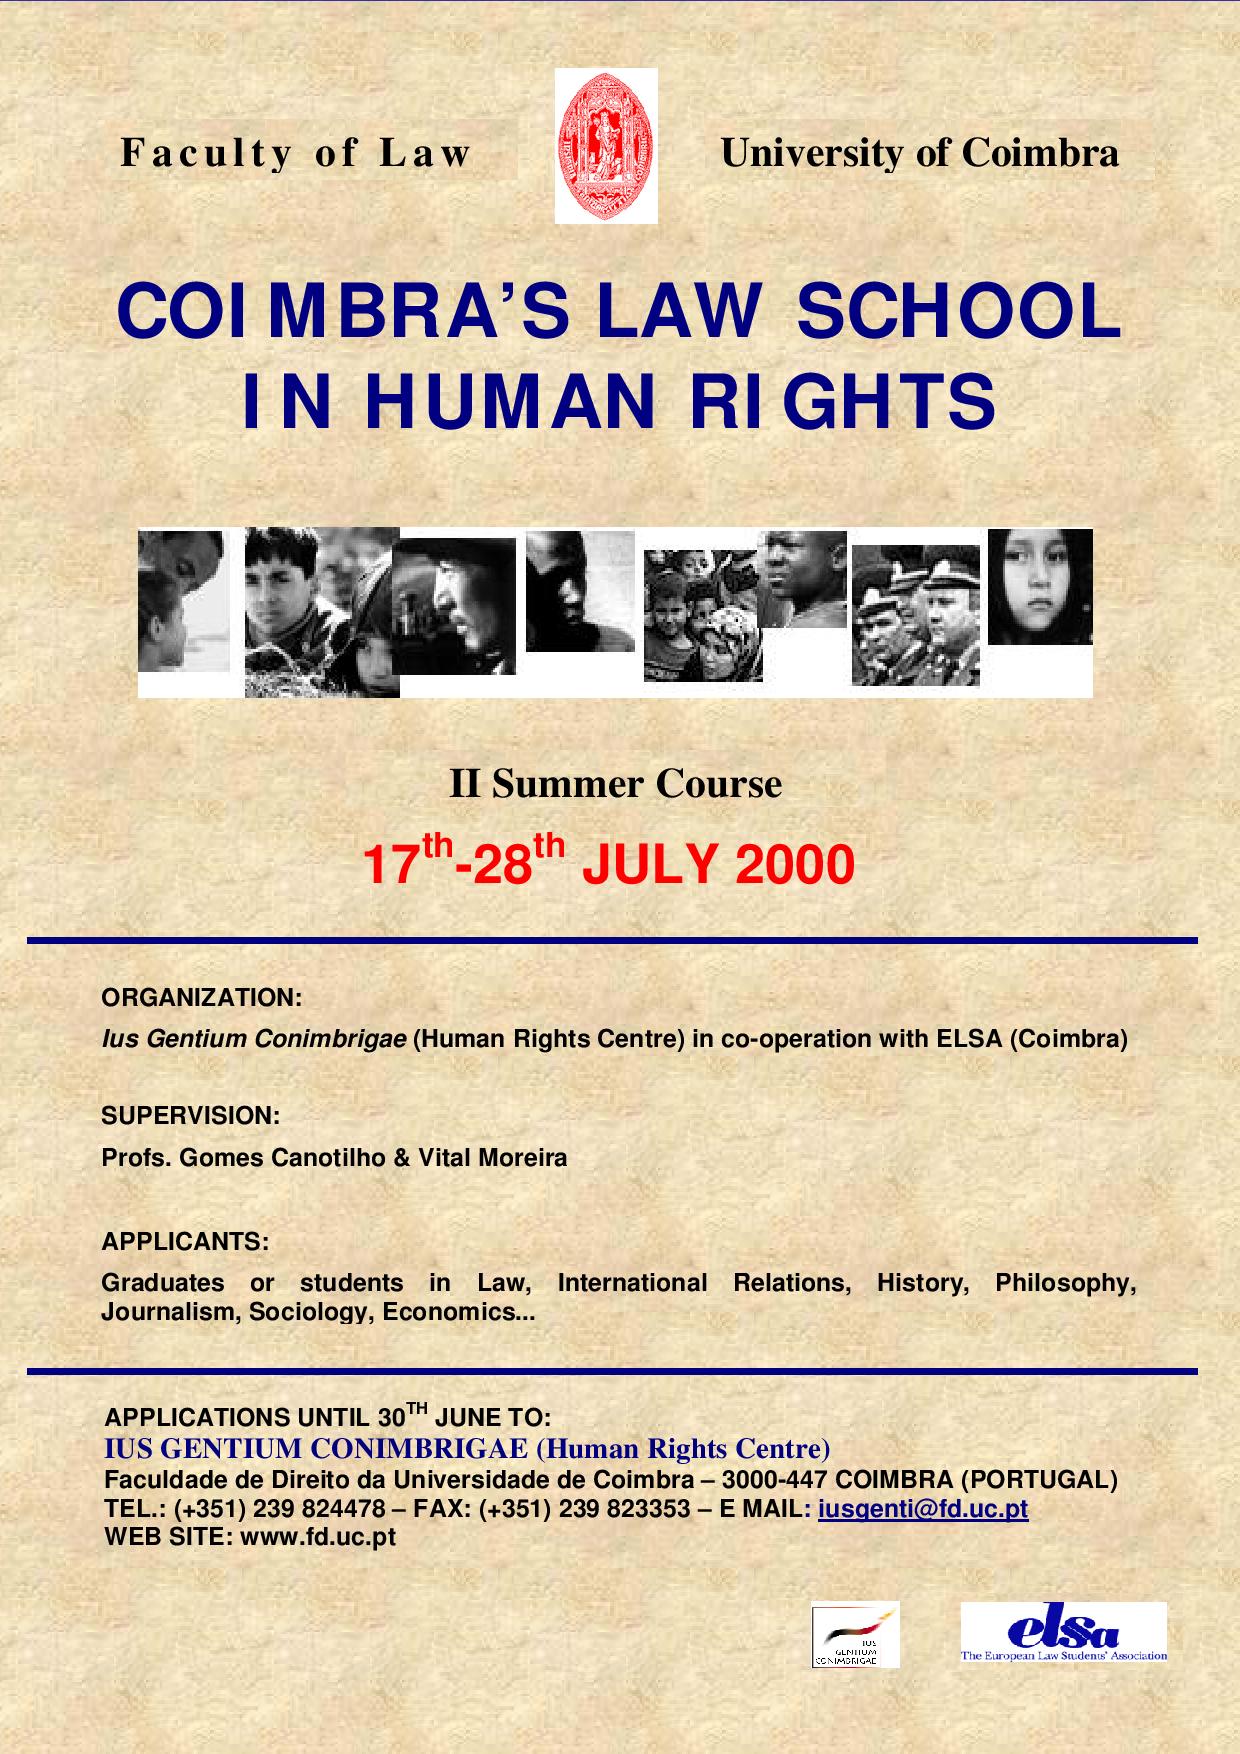 Curso de Verão “Law School in Human Rights” 